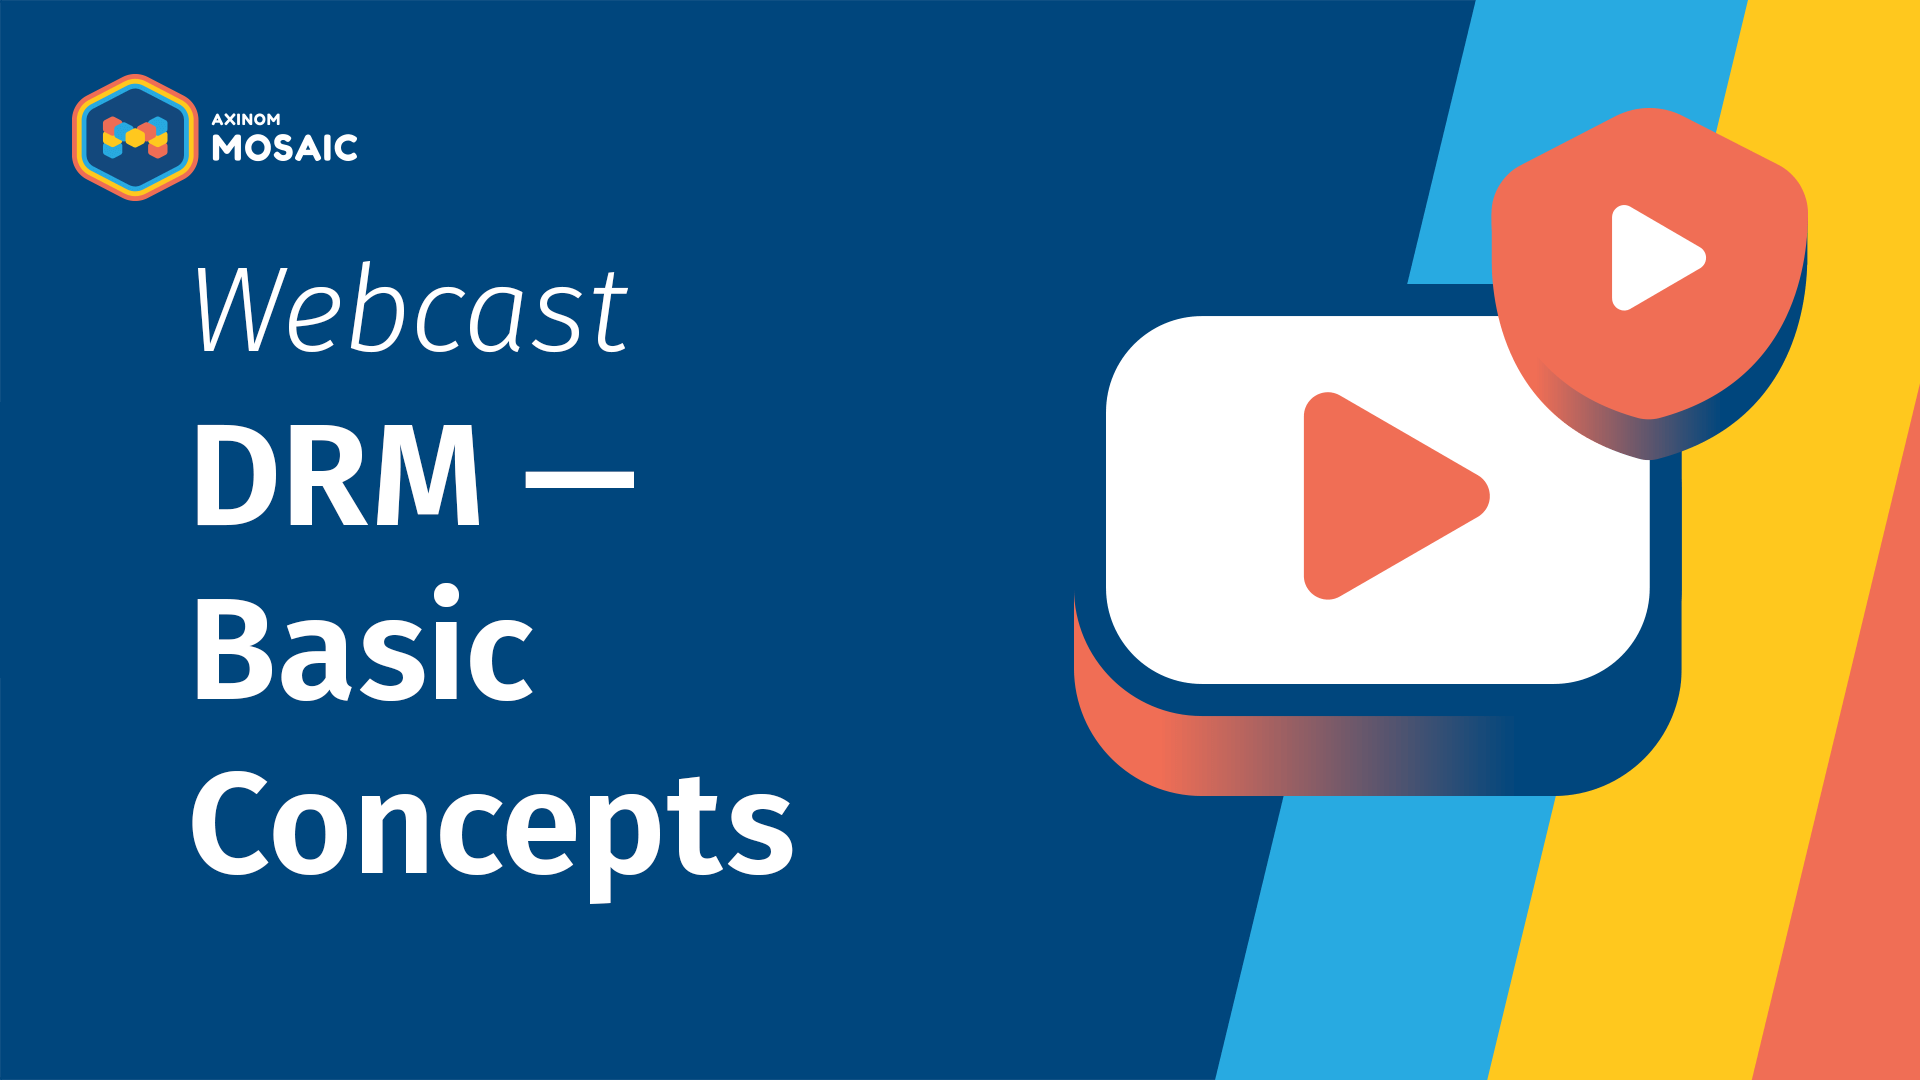 Webcast: DRM - Basic Concepts